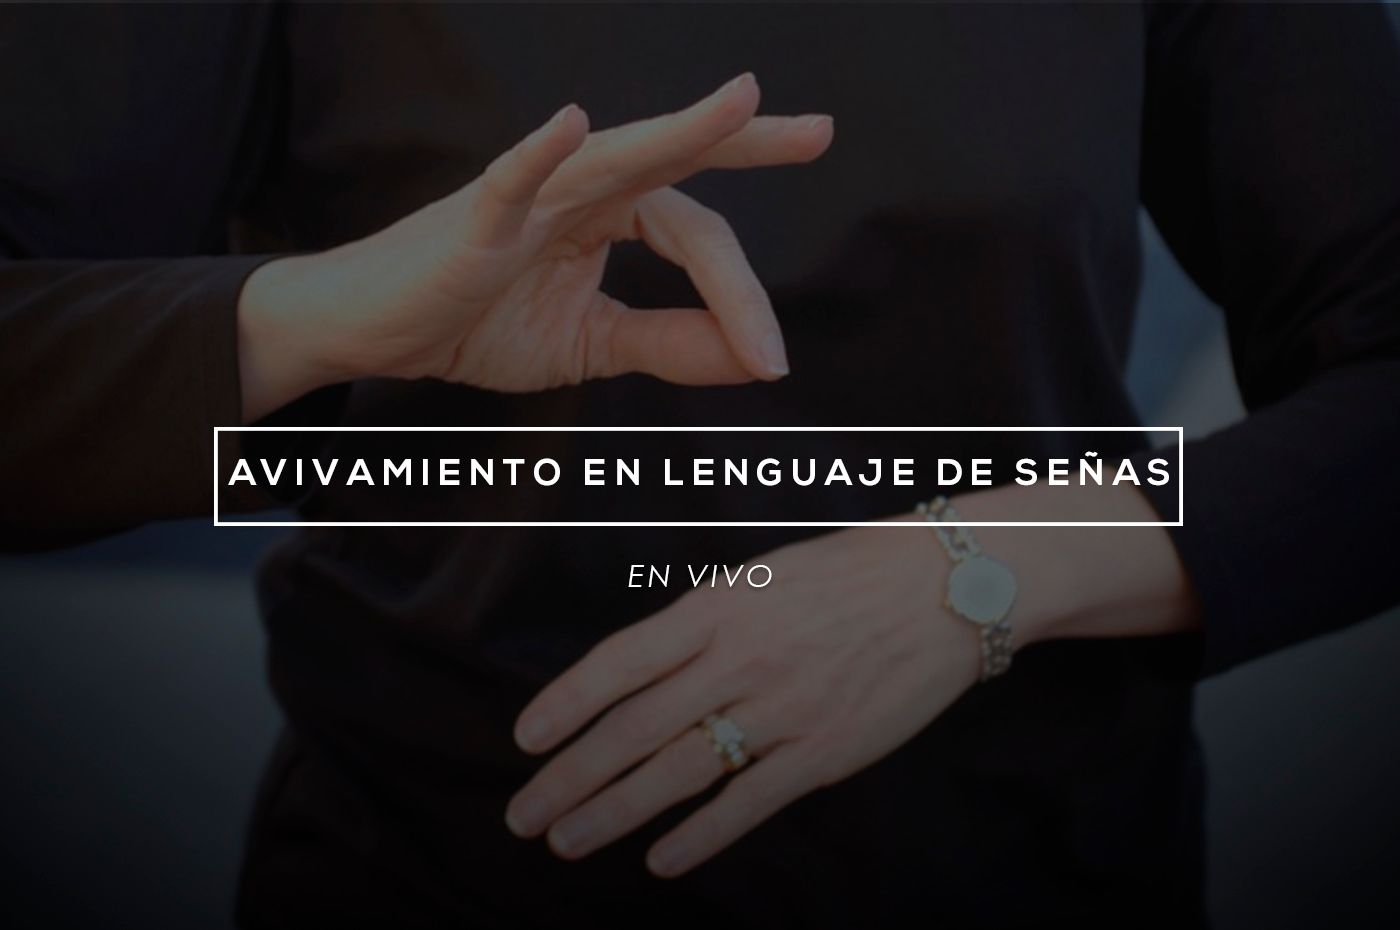 Avivamiento en el lenguaje de señas